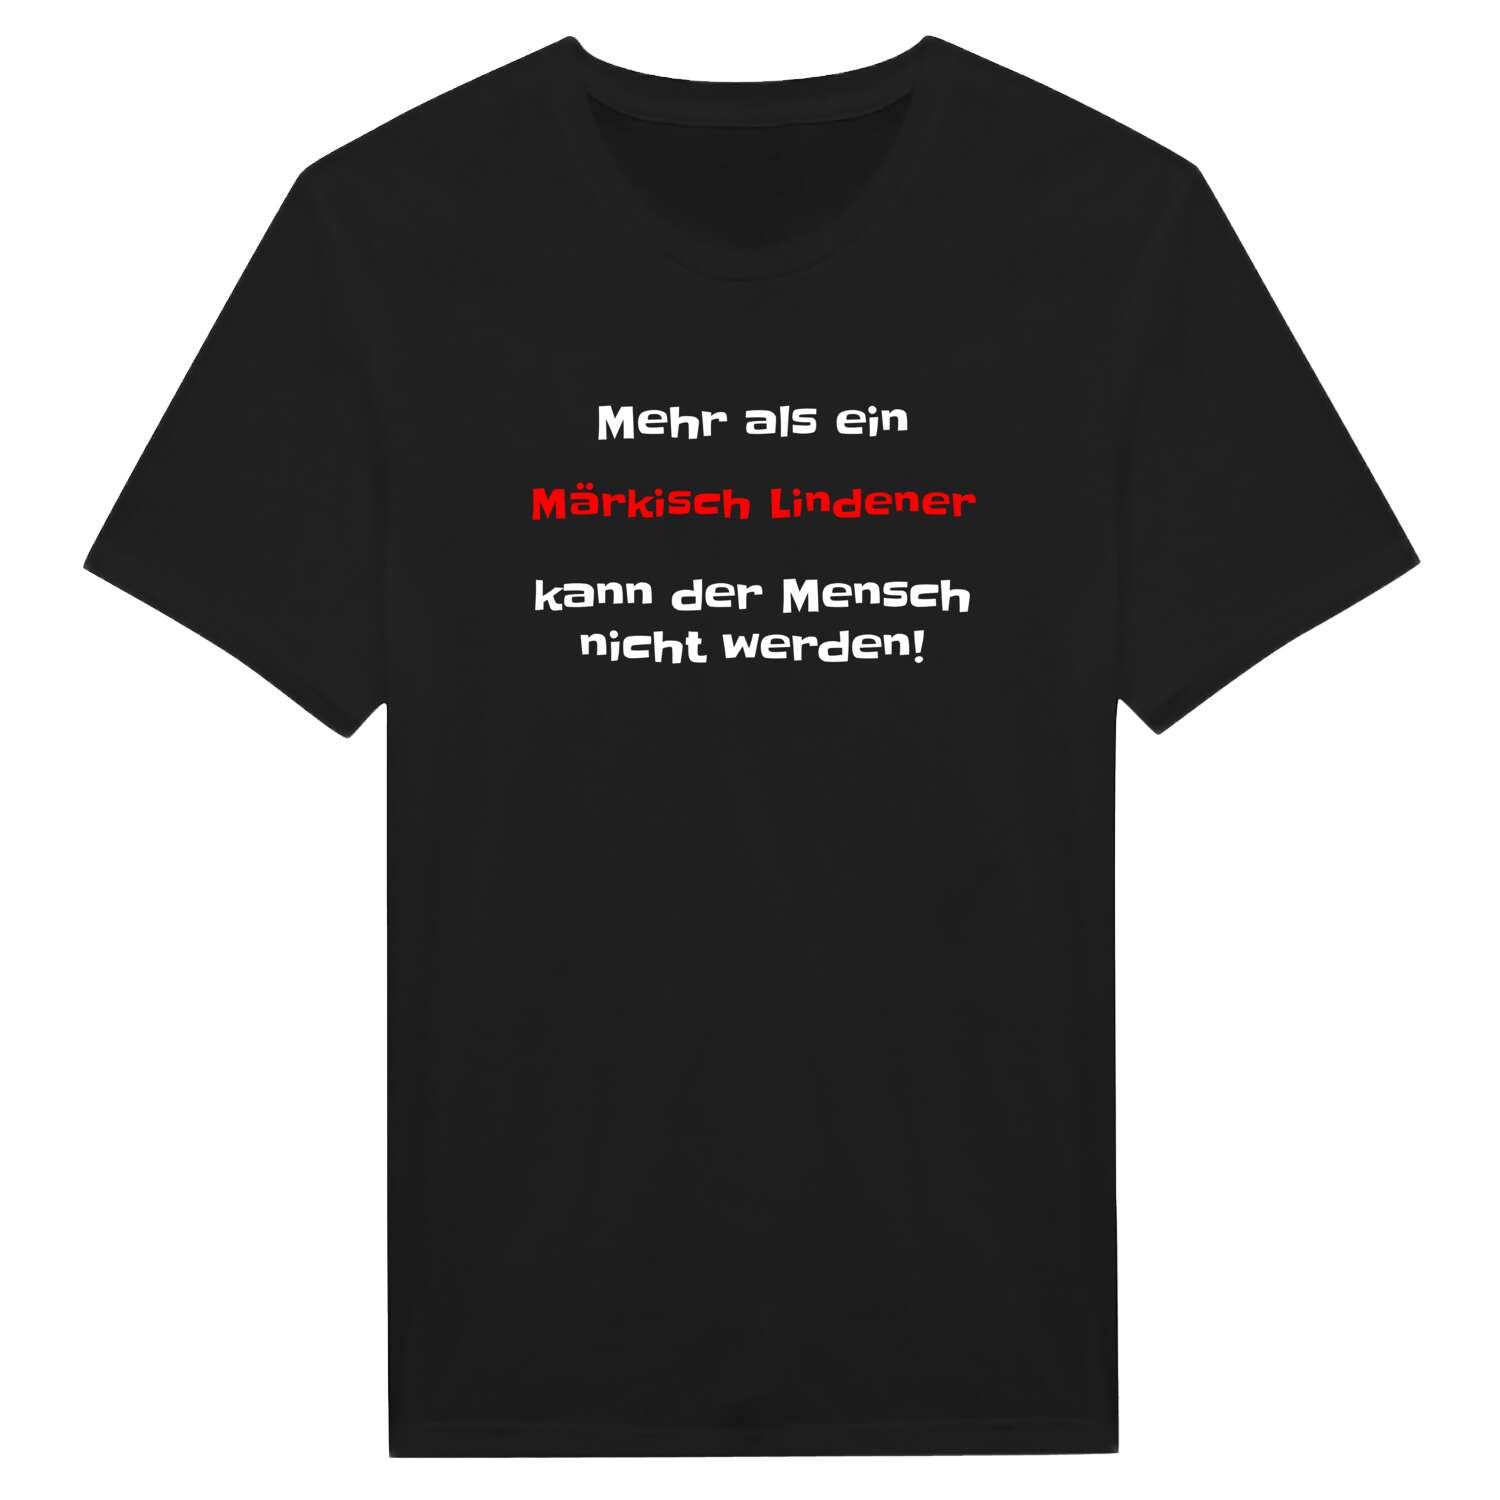 Märkisch Linden T-Shirt »Mehr als ein«